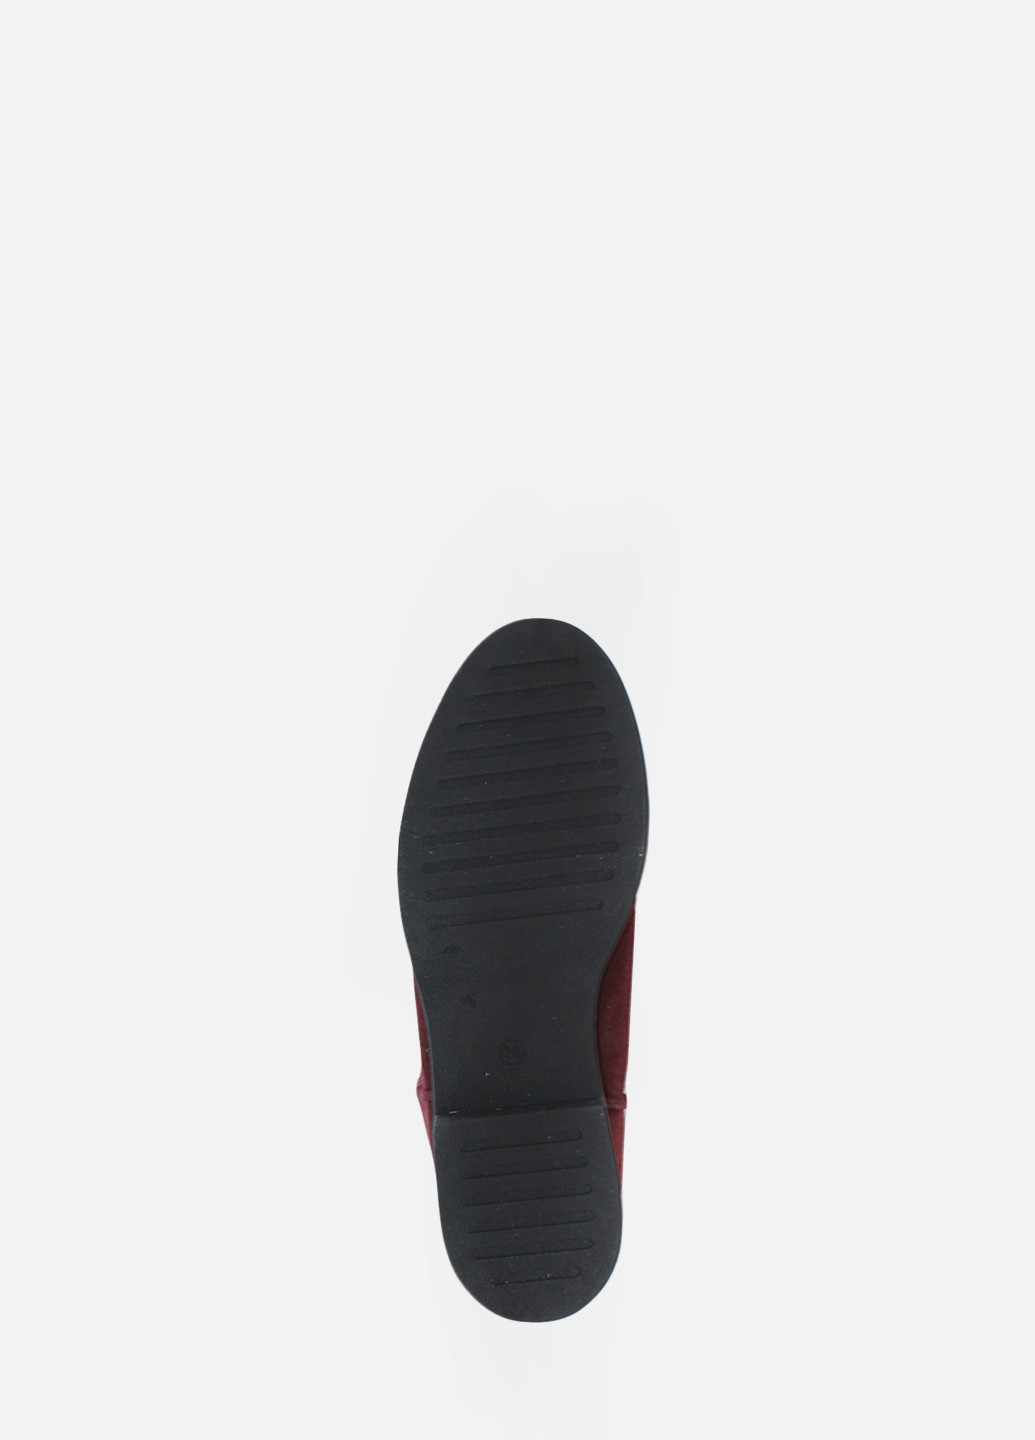 Зимние ботинки rk557-11 бордовый Kostas из натуральной замши